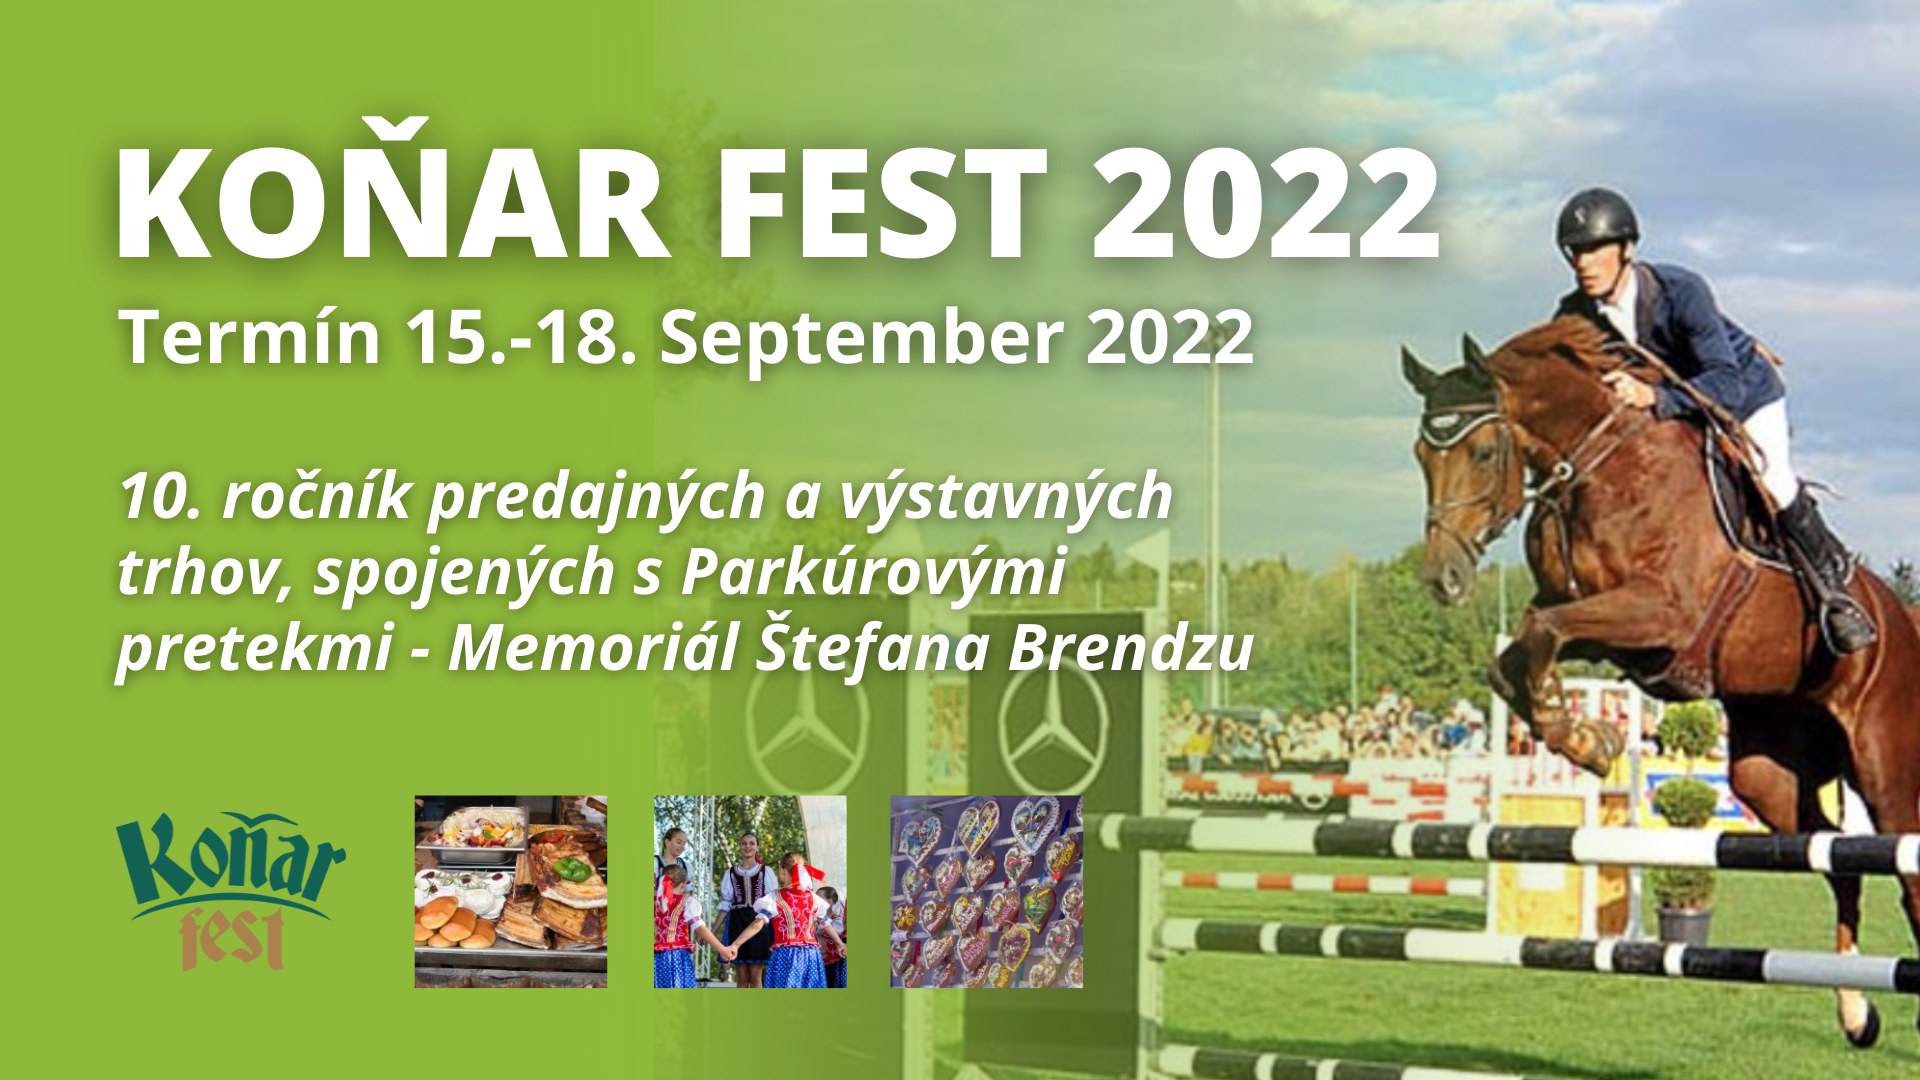 Koňar fest 2022 Prešov